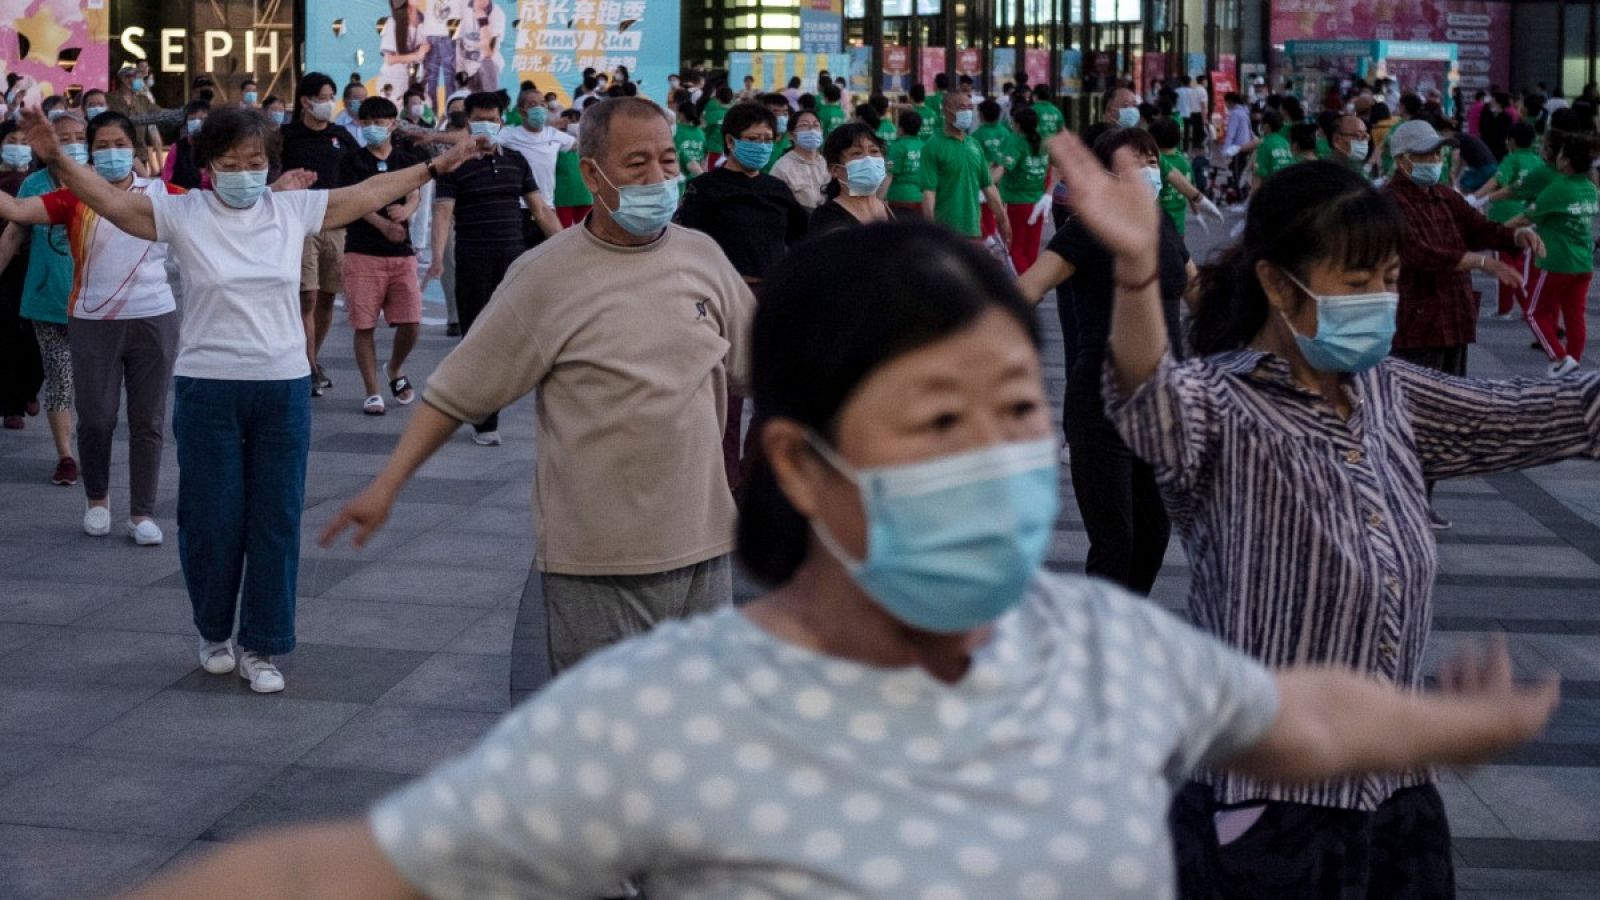 Un grupo practica deporte en un centro comercial de Pekín, con mascarillas y guardando cierta distancia